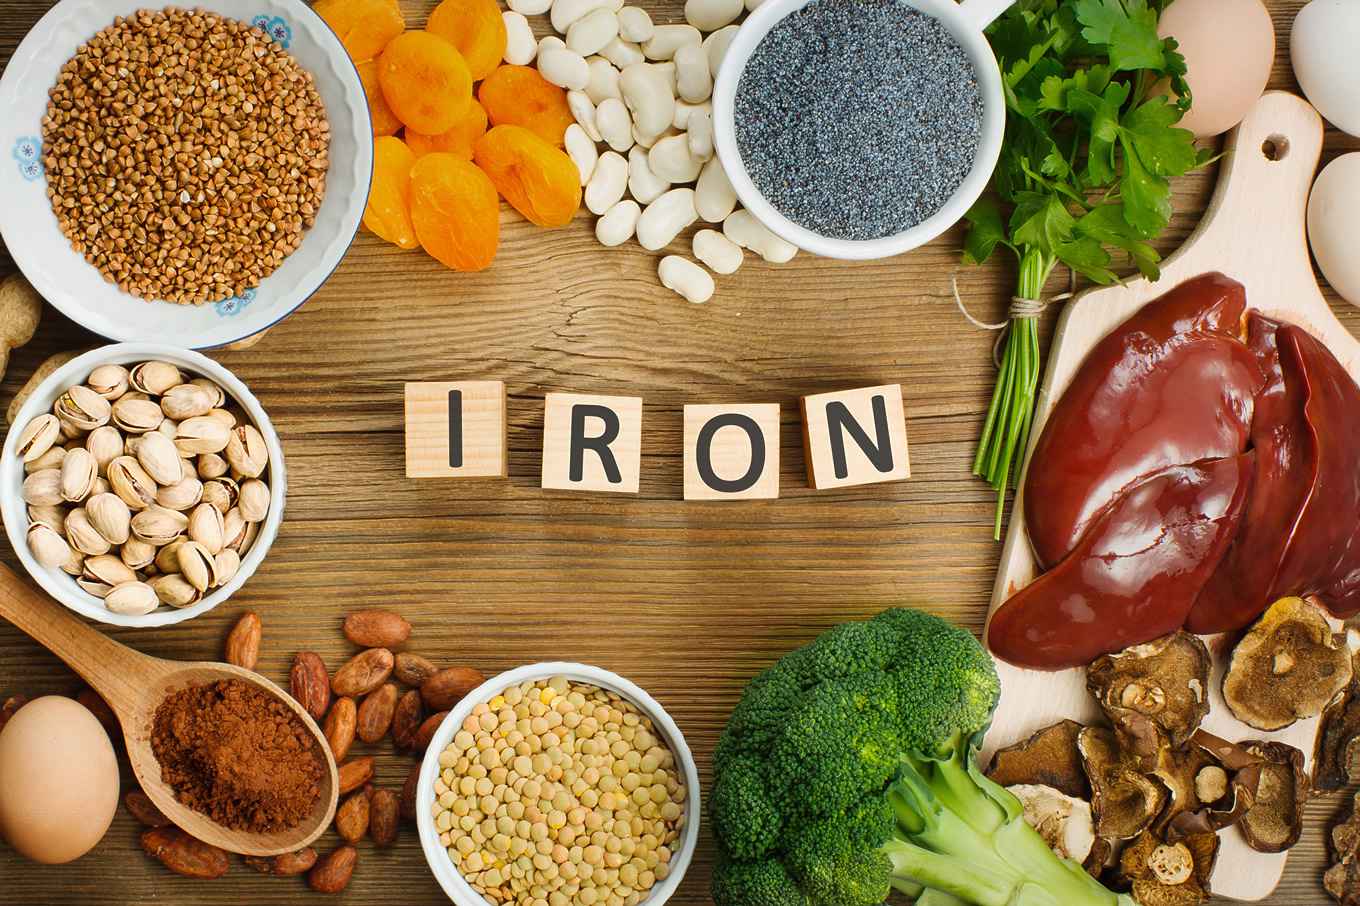 iron - مواد غذایی سرشار از آهن و خوراکی هایی که جذب آهن را در بدن افزایش می دهند